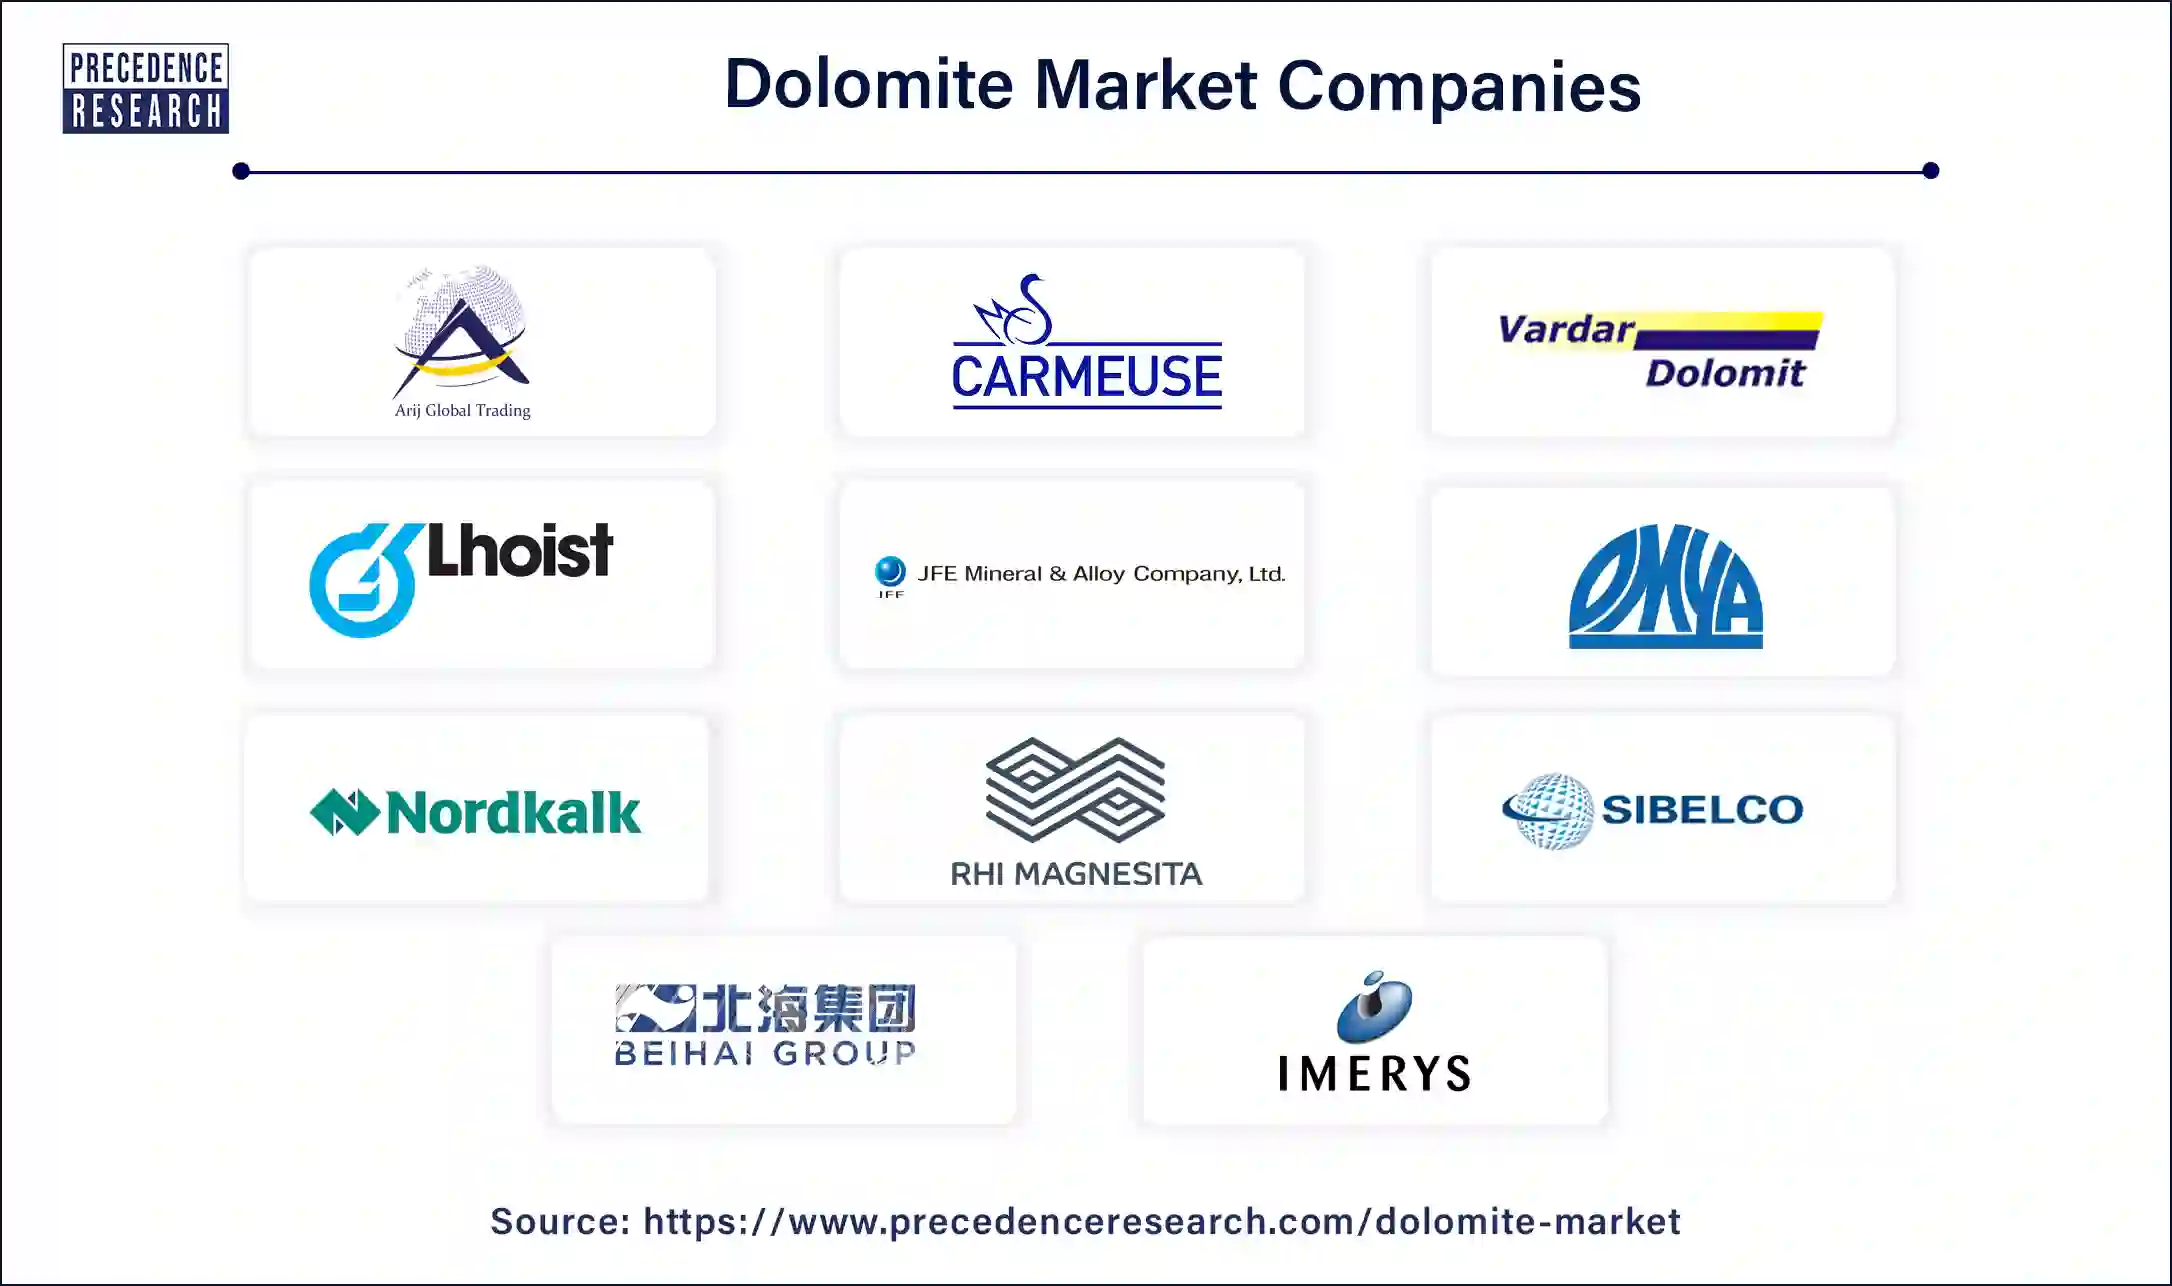 Dolomite Companies